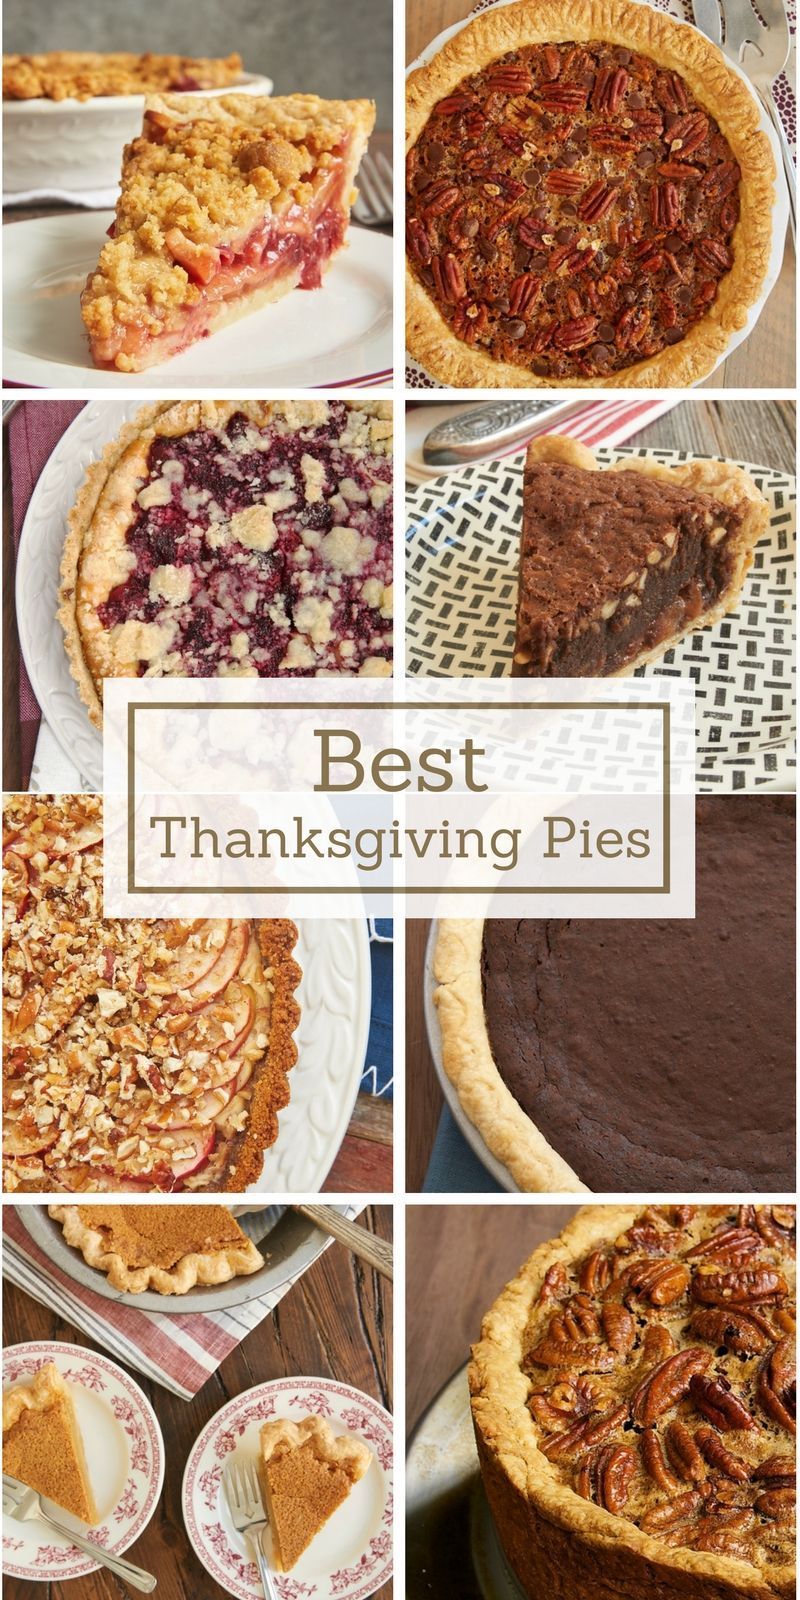 Best Thanksgiving Pies - Best Thanksgiving Pies -   19 thanksgiving desserts pie ideas